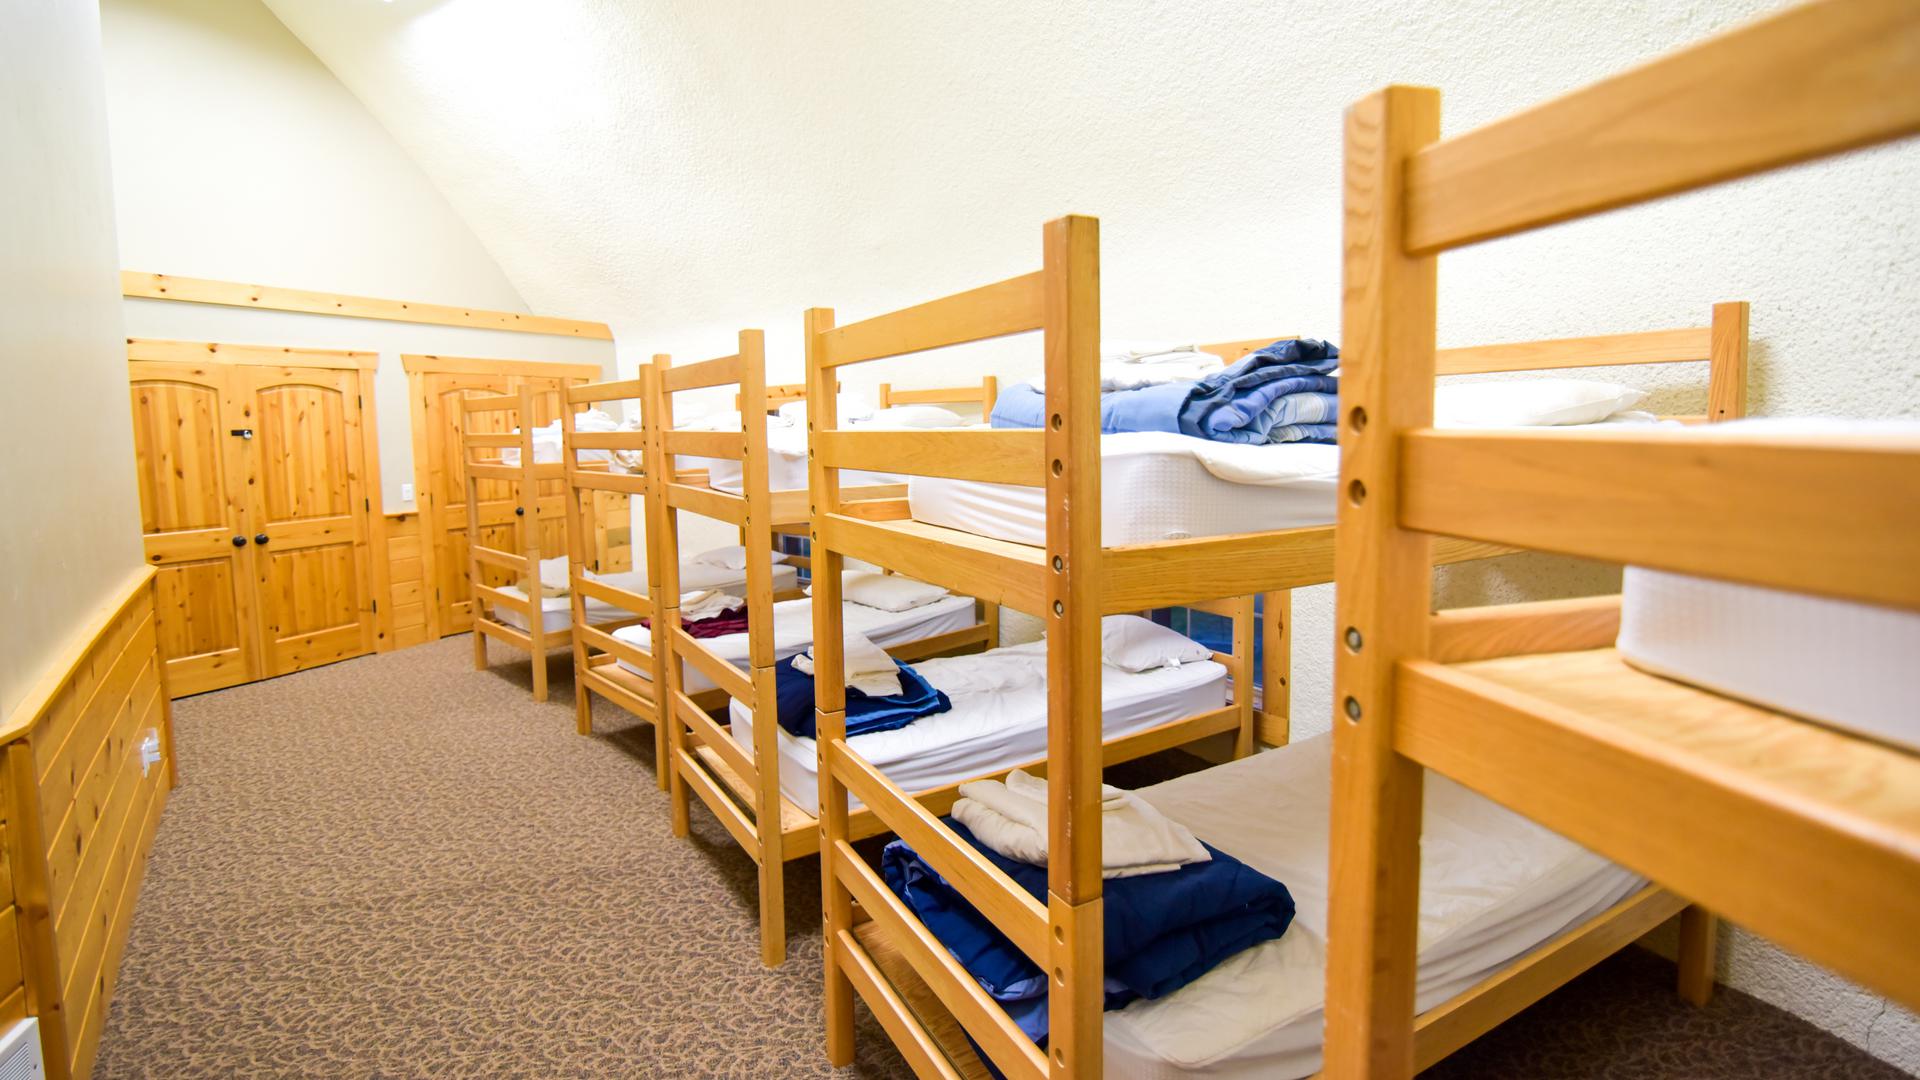 Two bunk rooms sleep twenty.